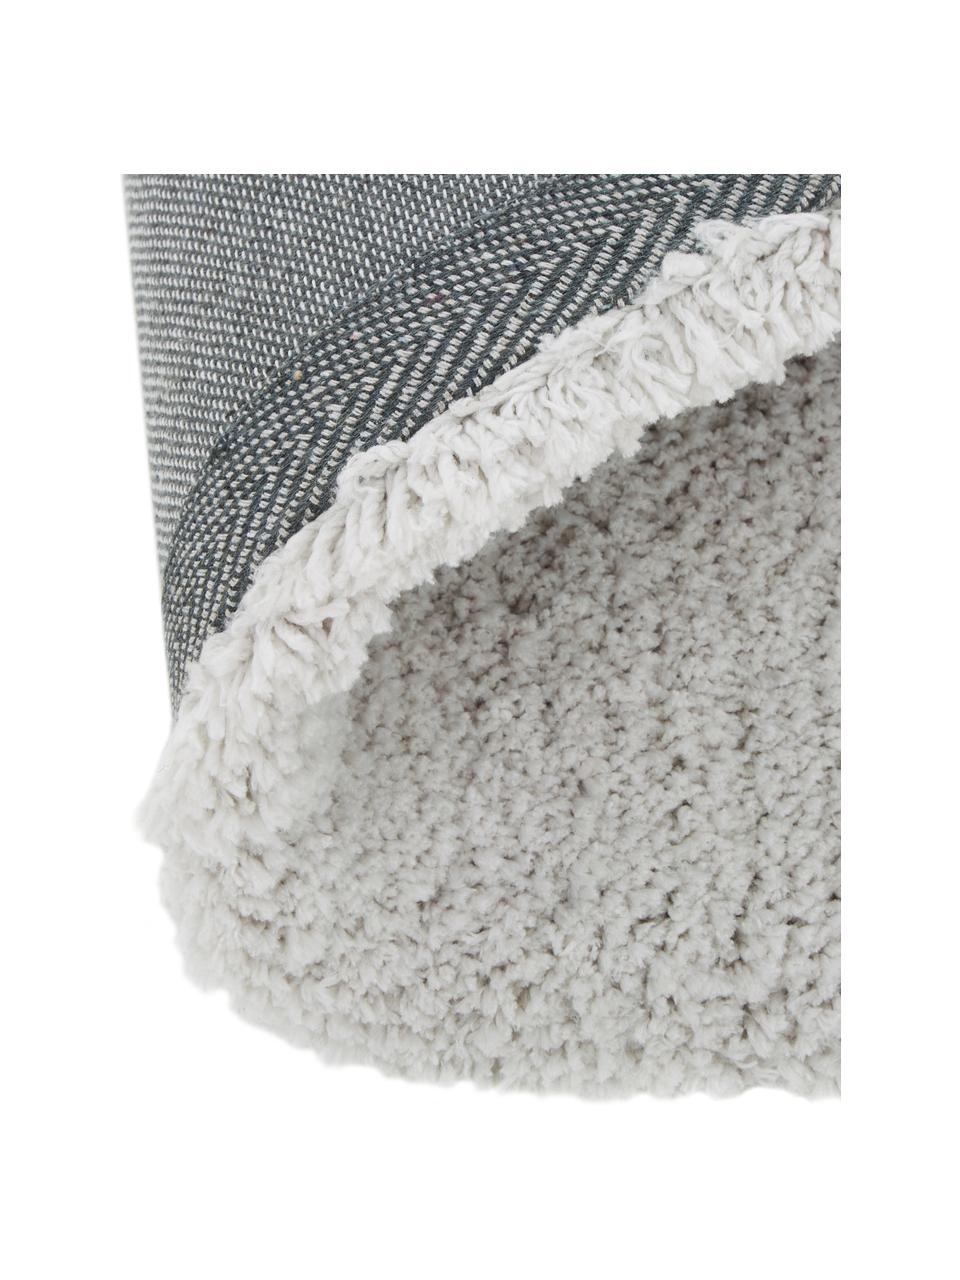 Fluffy Rond hoogpolig vloerkleed Leighton in lichtgrijs-beige, Bovenzijde: microvezels (100% polyest, Onderzijde: 70% polyester, 30% katoen, Lichtgrijs-beige, Ø 120 cm (maat S)